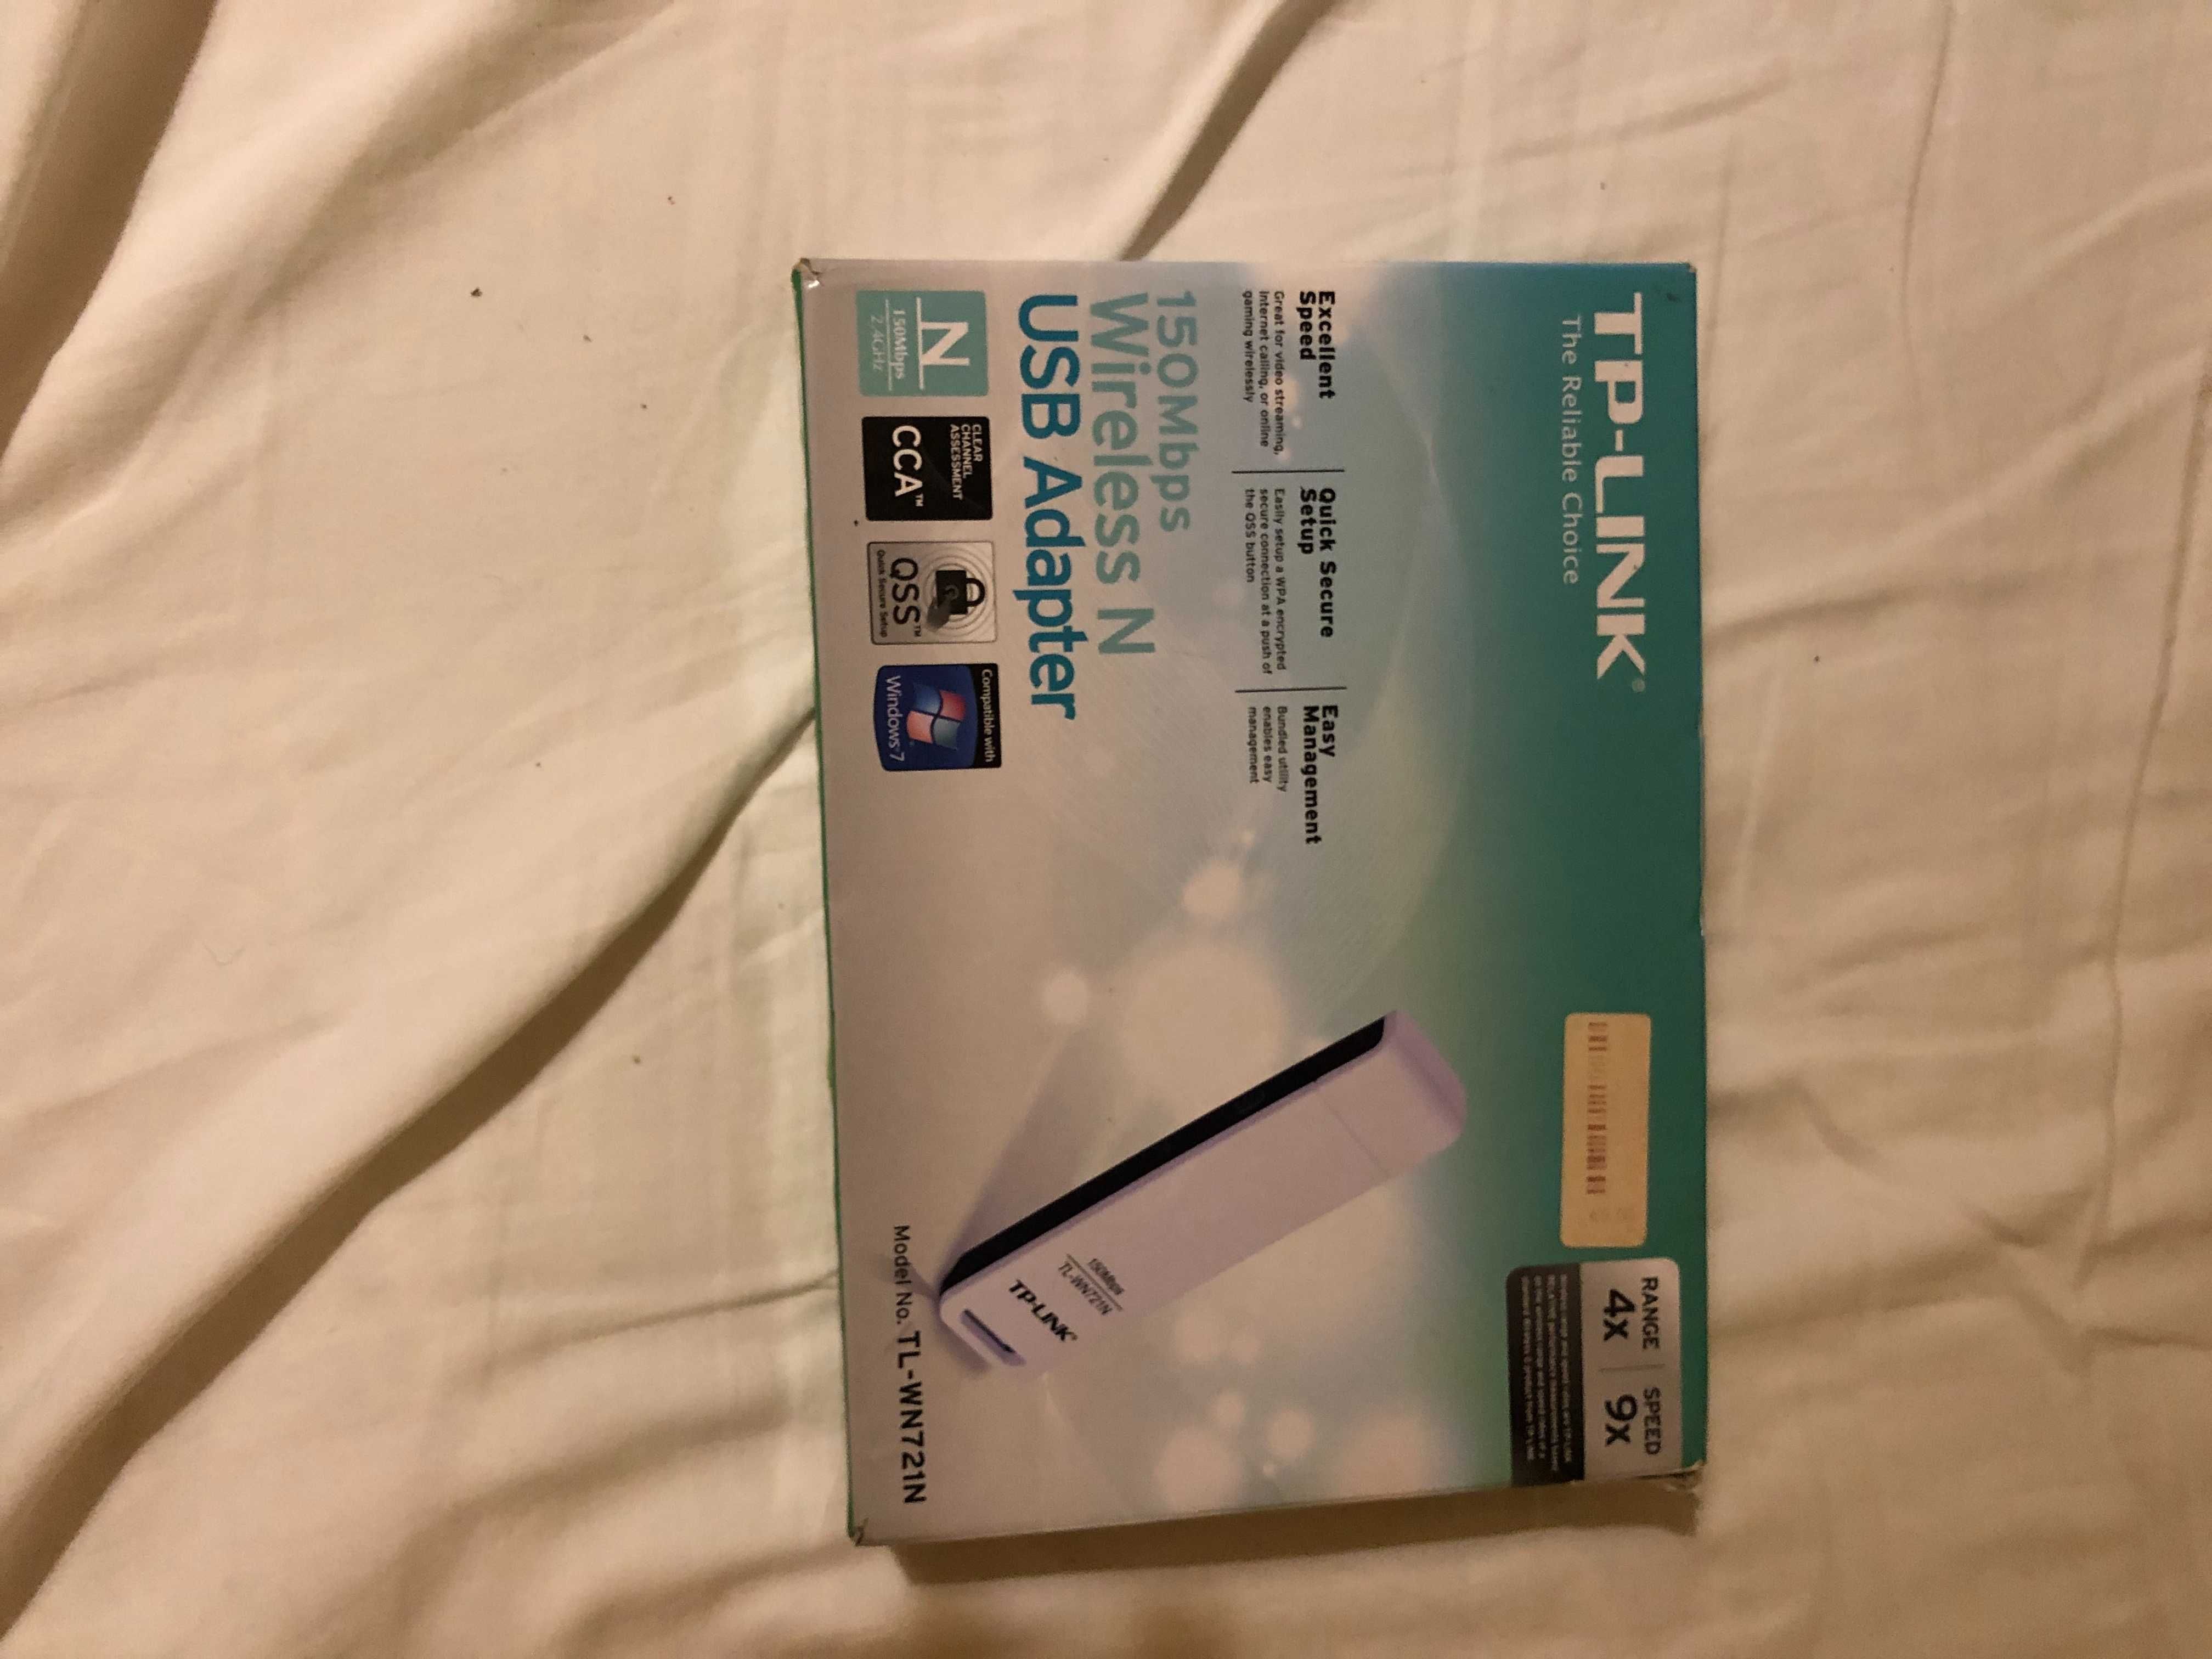 Pen de internet TP-Link Wireless N